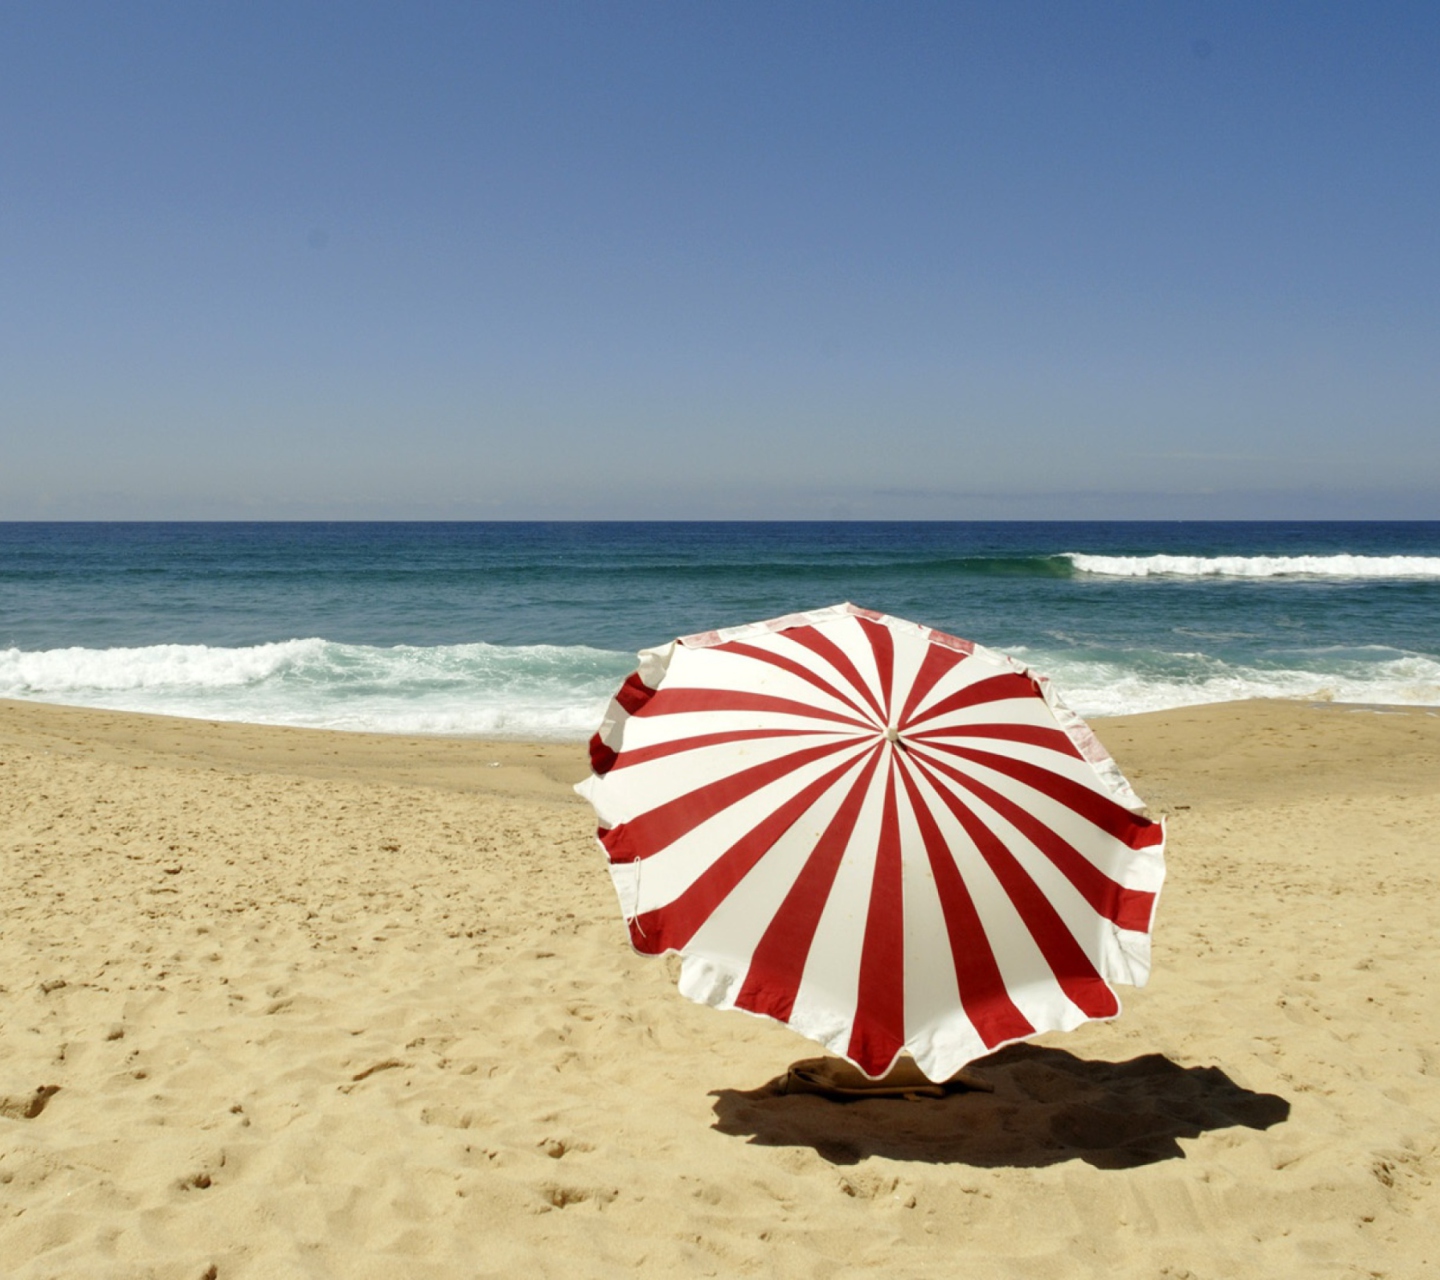 Обои Umbrella On The Beach 1440x1280